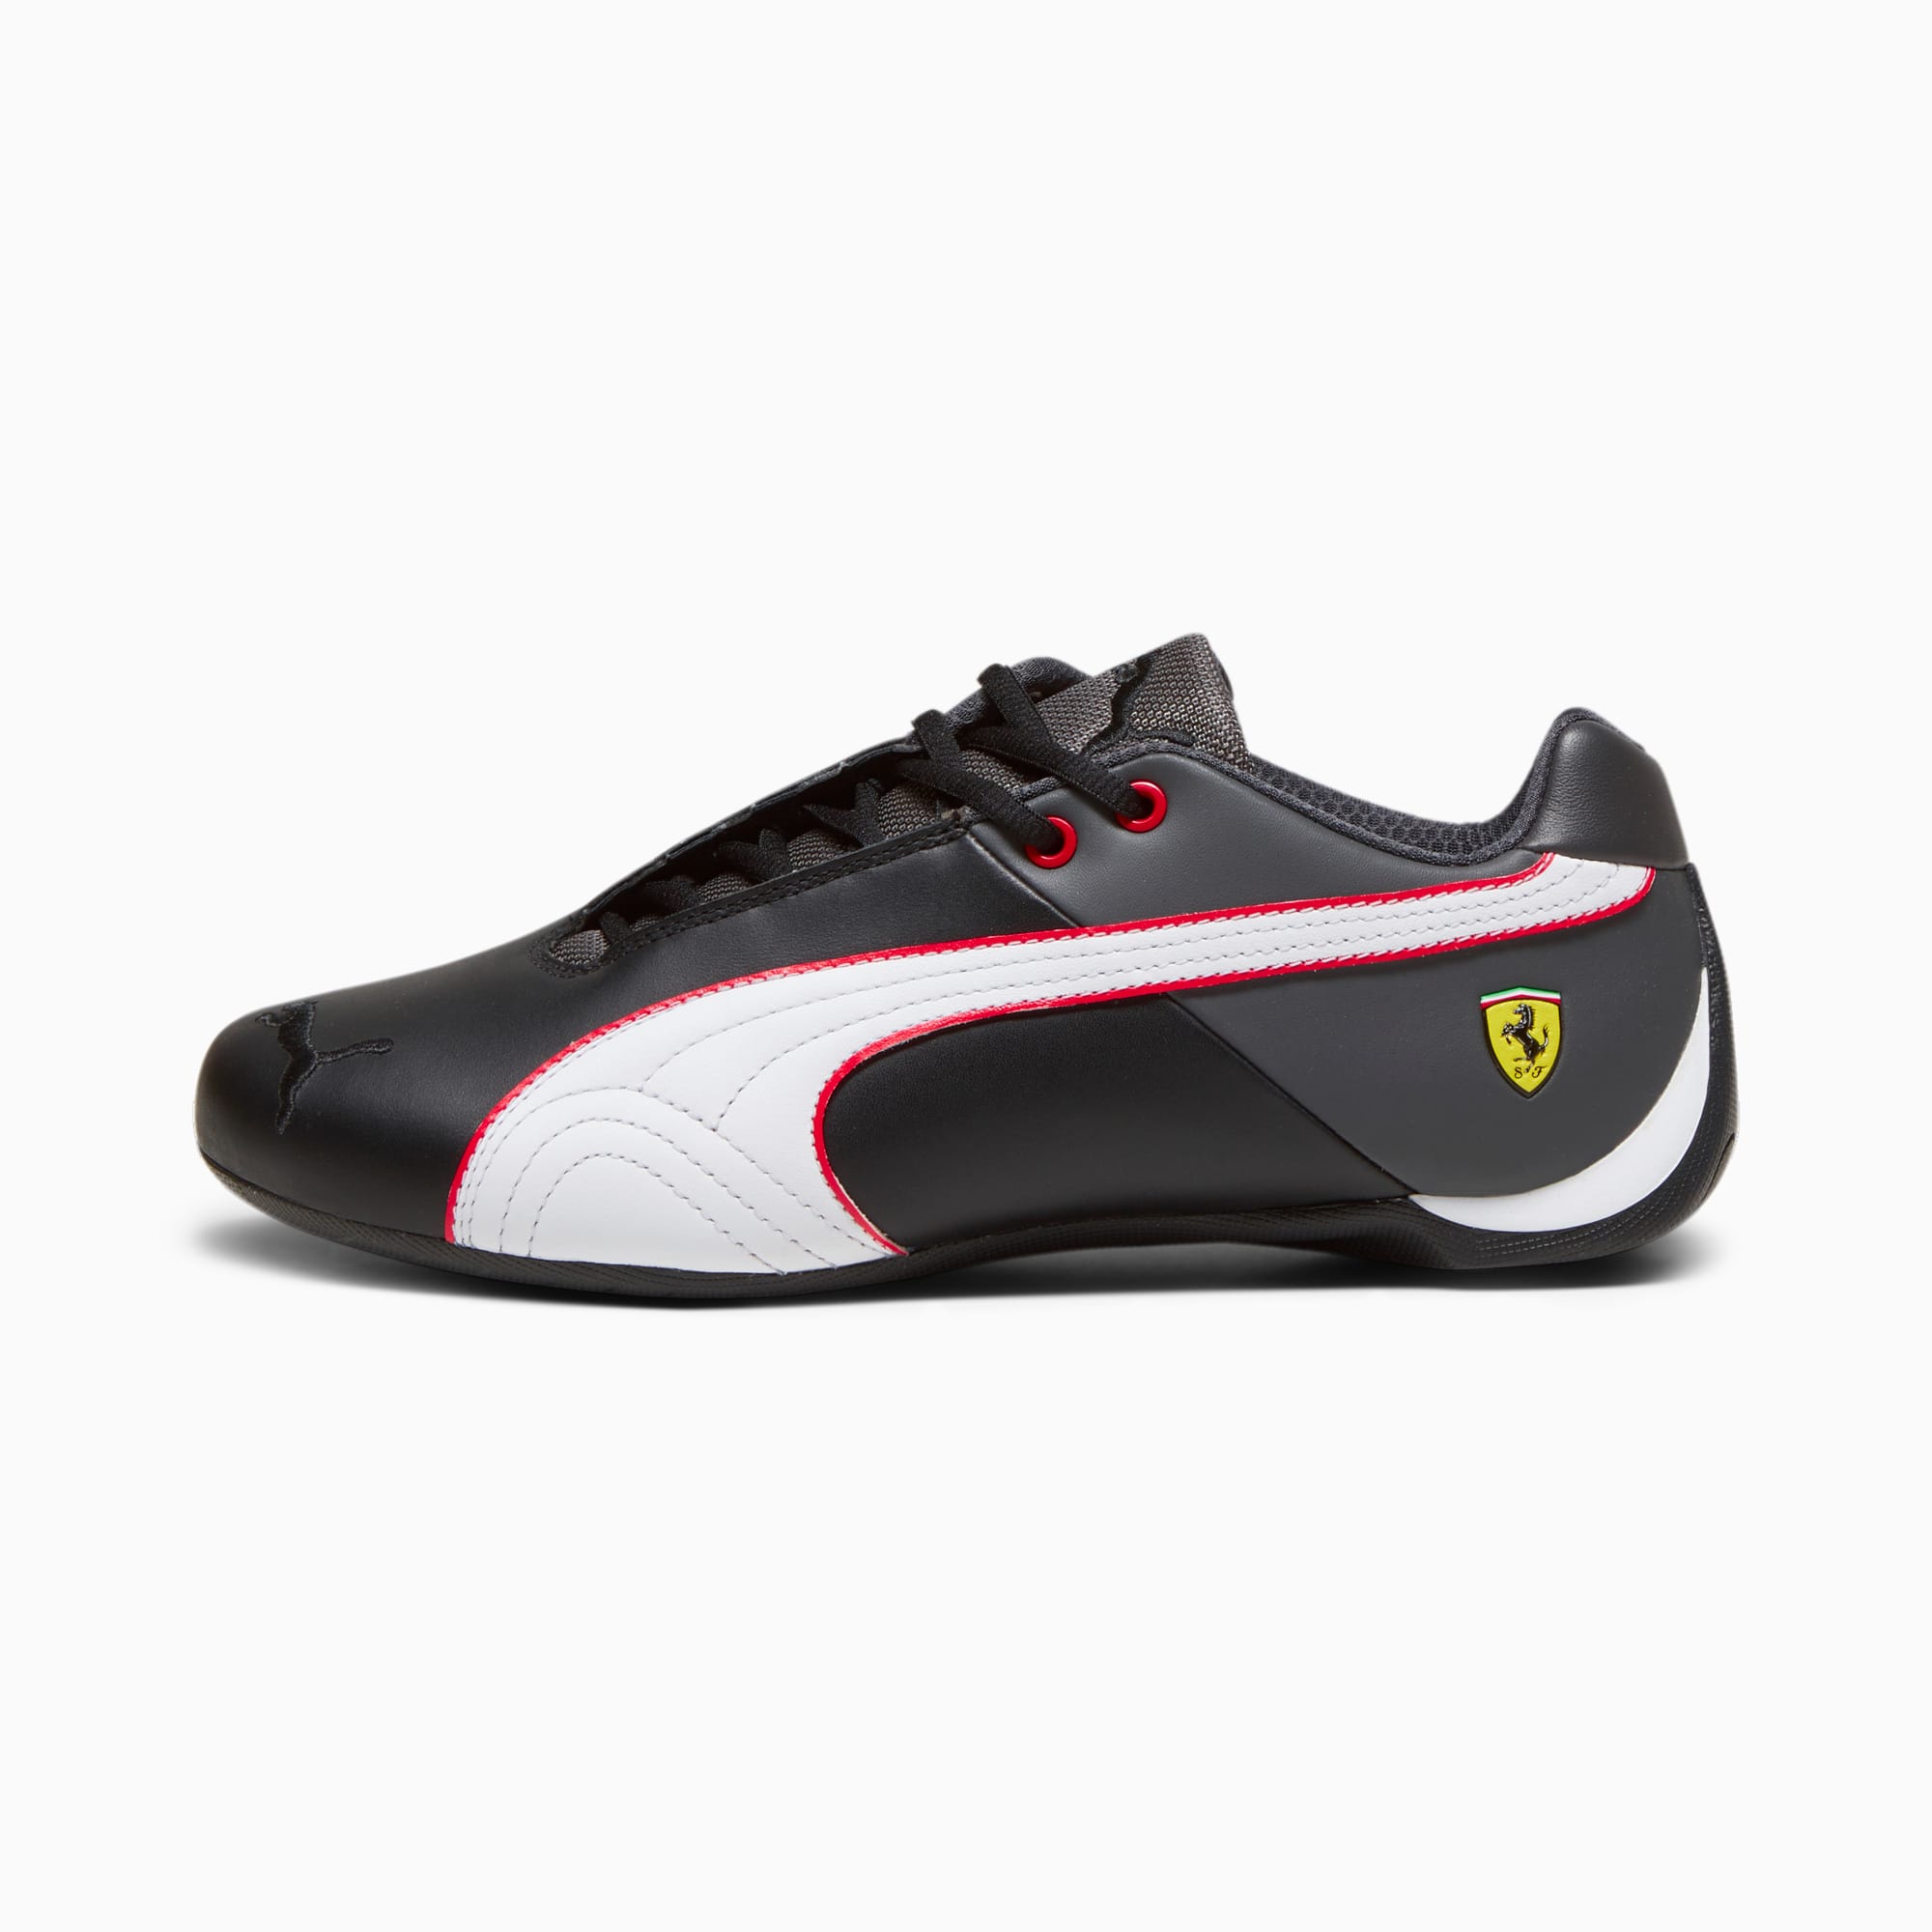 PUMA Scuderia Ferrari Future Cat OG Motorsportschuhe, Schwarz/Grau/Weiß, Größe: 40, Schuhe